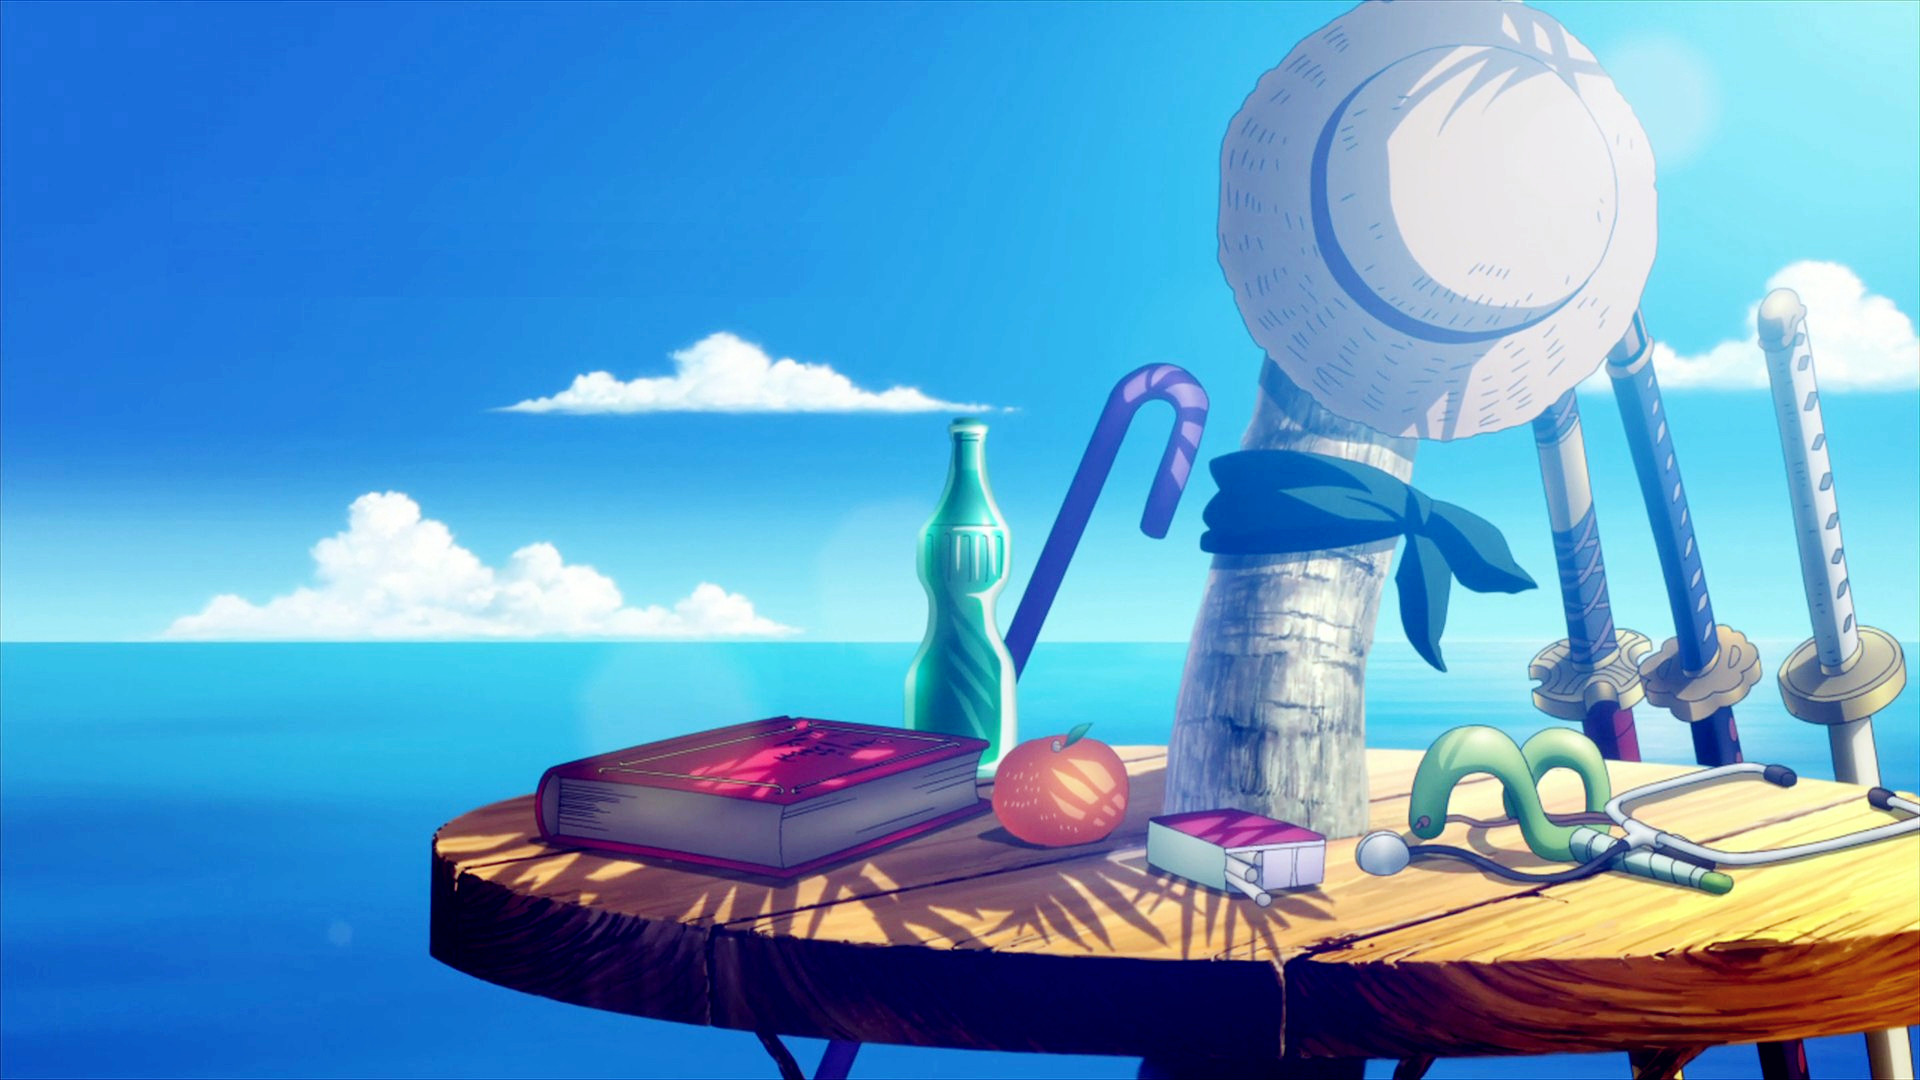 Vua Hải Tặc: Với những ai yêu thích anime thì không thể bỏ qua tác phẩm Vua Hải Tặc. Chuyến phiêu lưu đầy mạo hiểm của nhóm Luffy và hành trình tìm kiếm kho báu One Piece sẽ khiến bạn phải háo hức. Hãy xem hình ảnh liên quan đến Vua Hải Tặc để đắm chìm vào thế giới kiếm hiệp đầy hấp dẫn này.